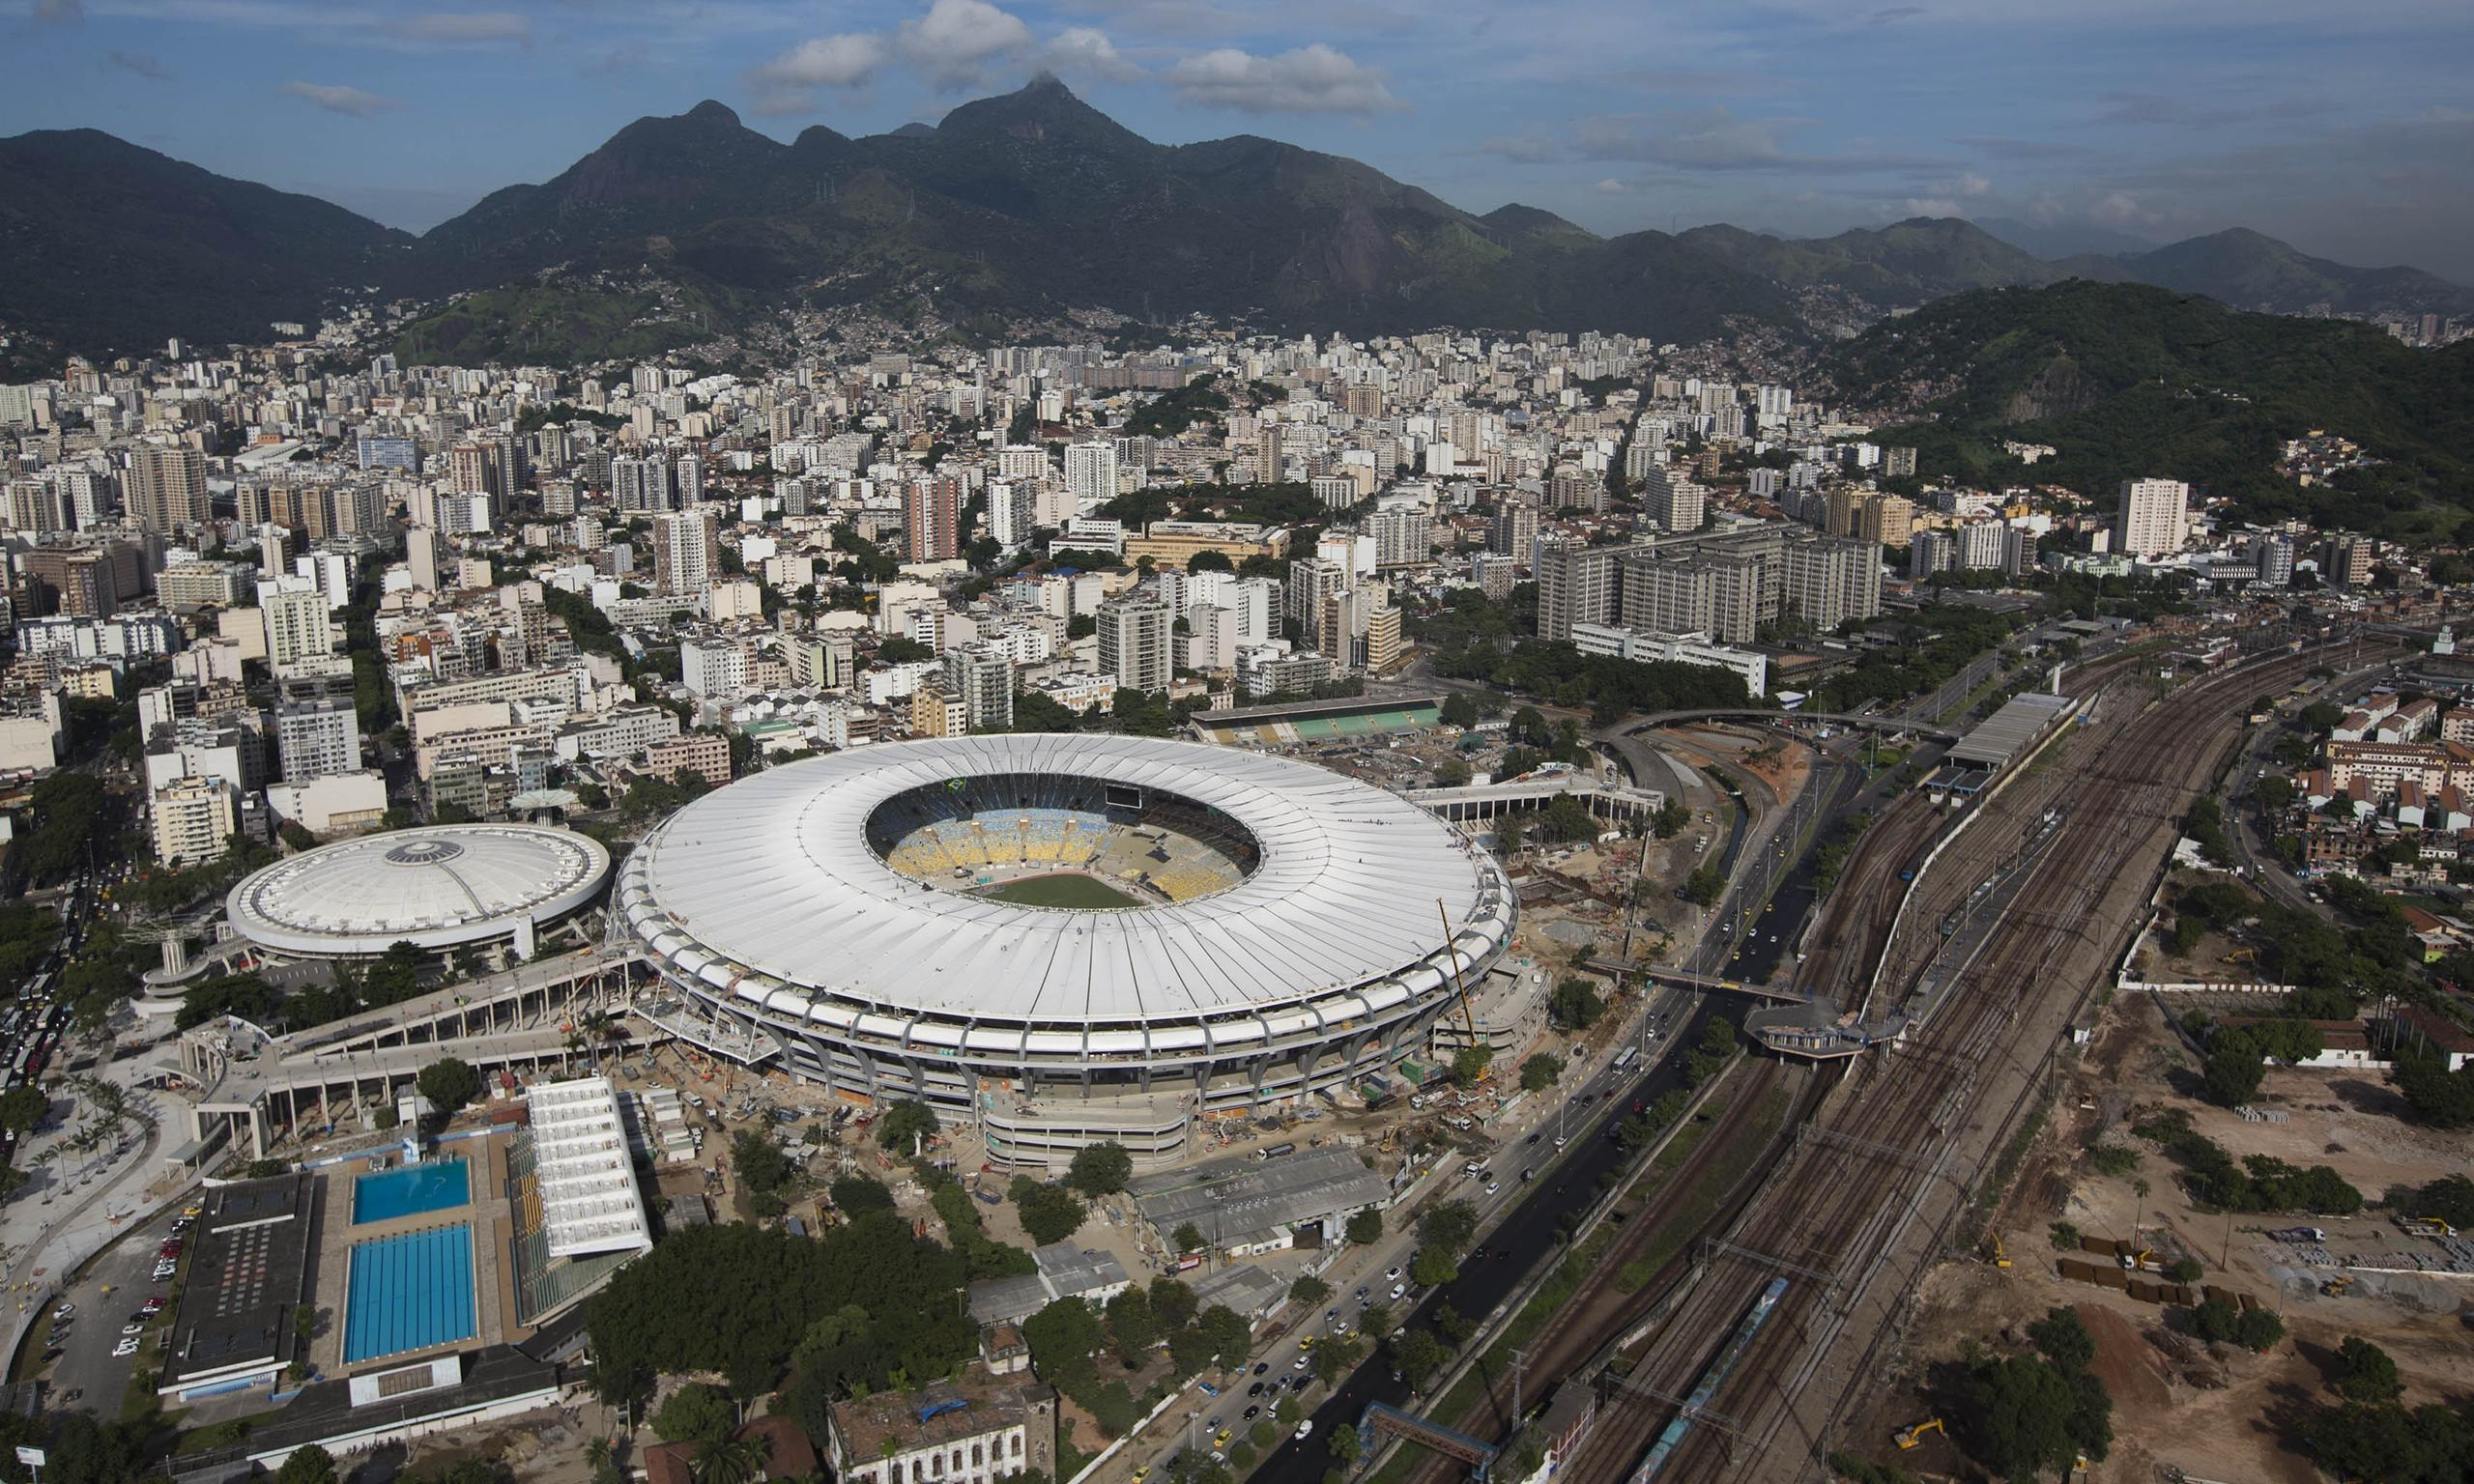 2560x1536 Rio de Janeiro Stadium World Cup High Definition, High Resolution HD Wallpapers : High Definition, High Resolution HD Wallpapers